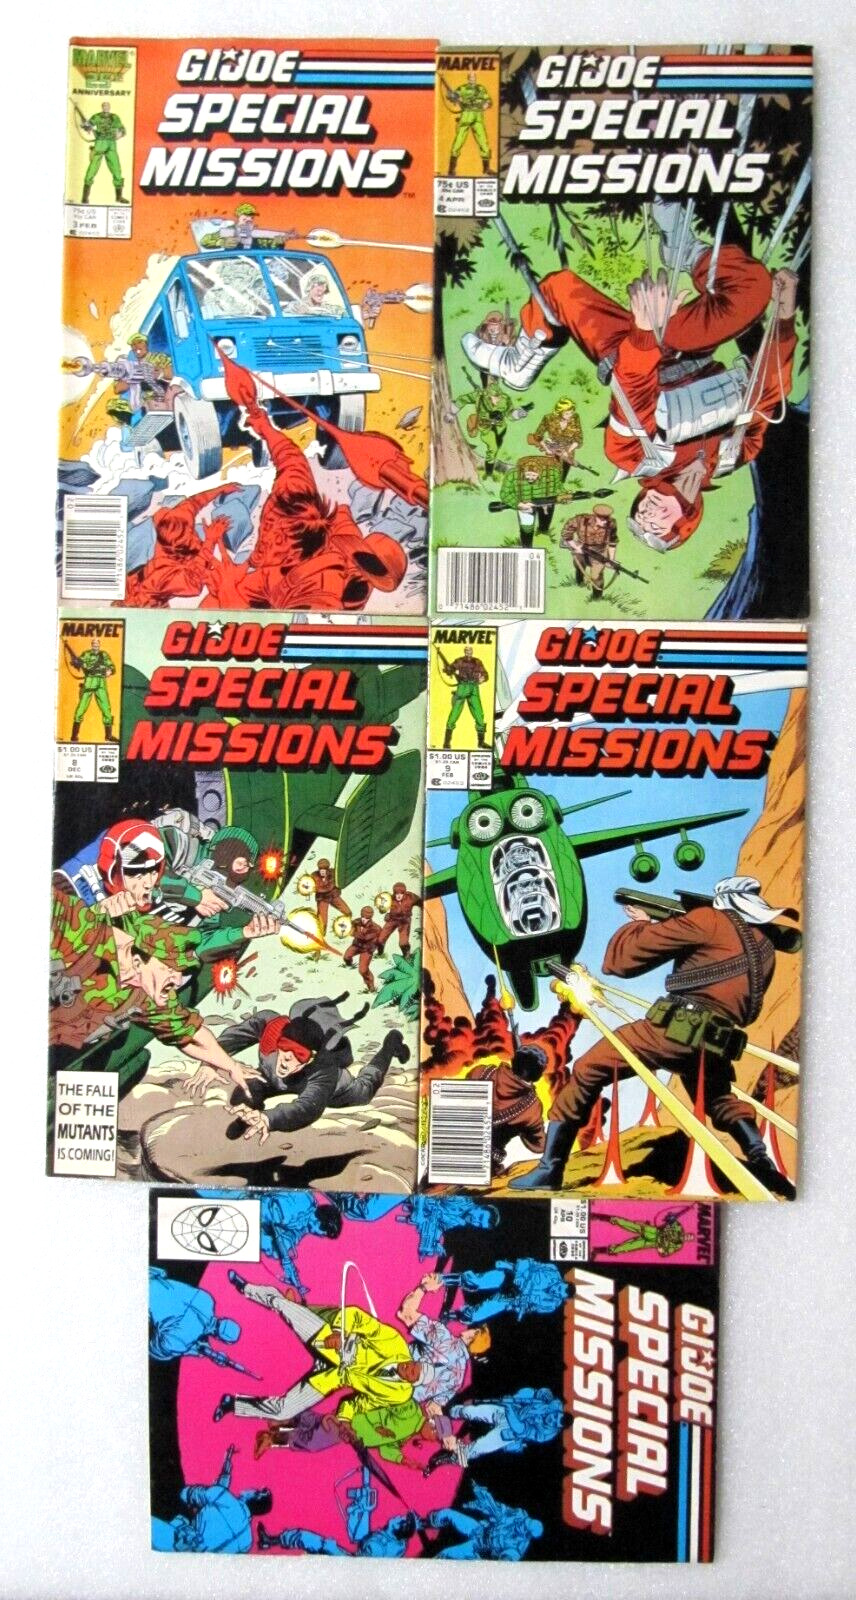 LOT OF 5 G. I. JOE COMICS SPECIAL MISSIONS #3 #4 #8 #9 #10 1986 MARVEL COMICS